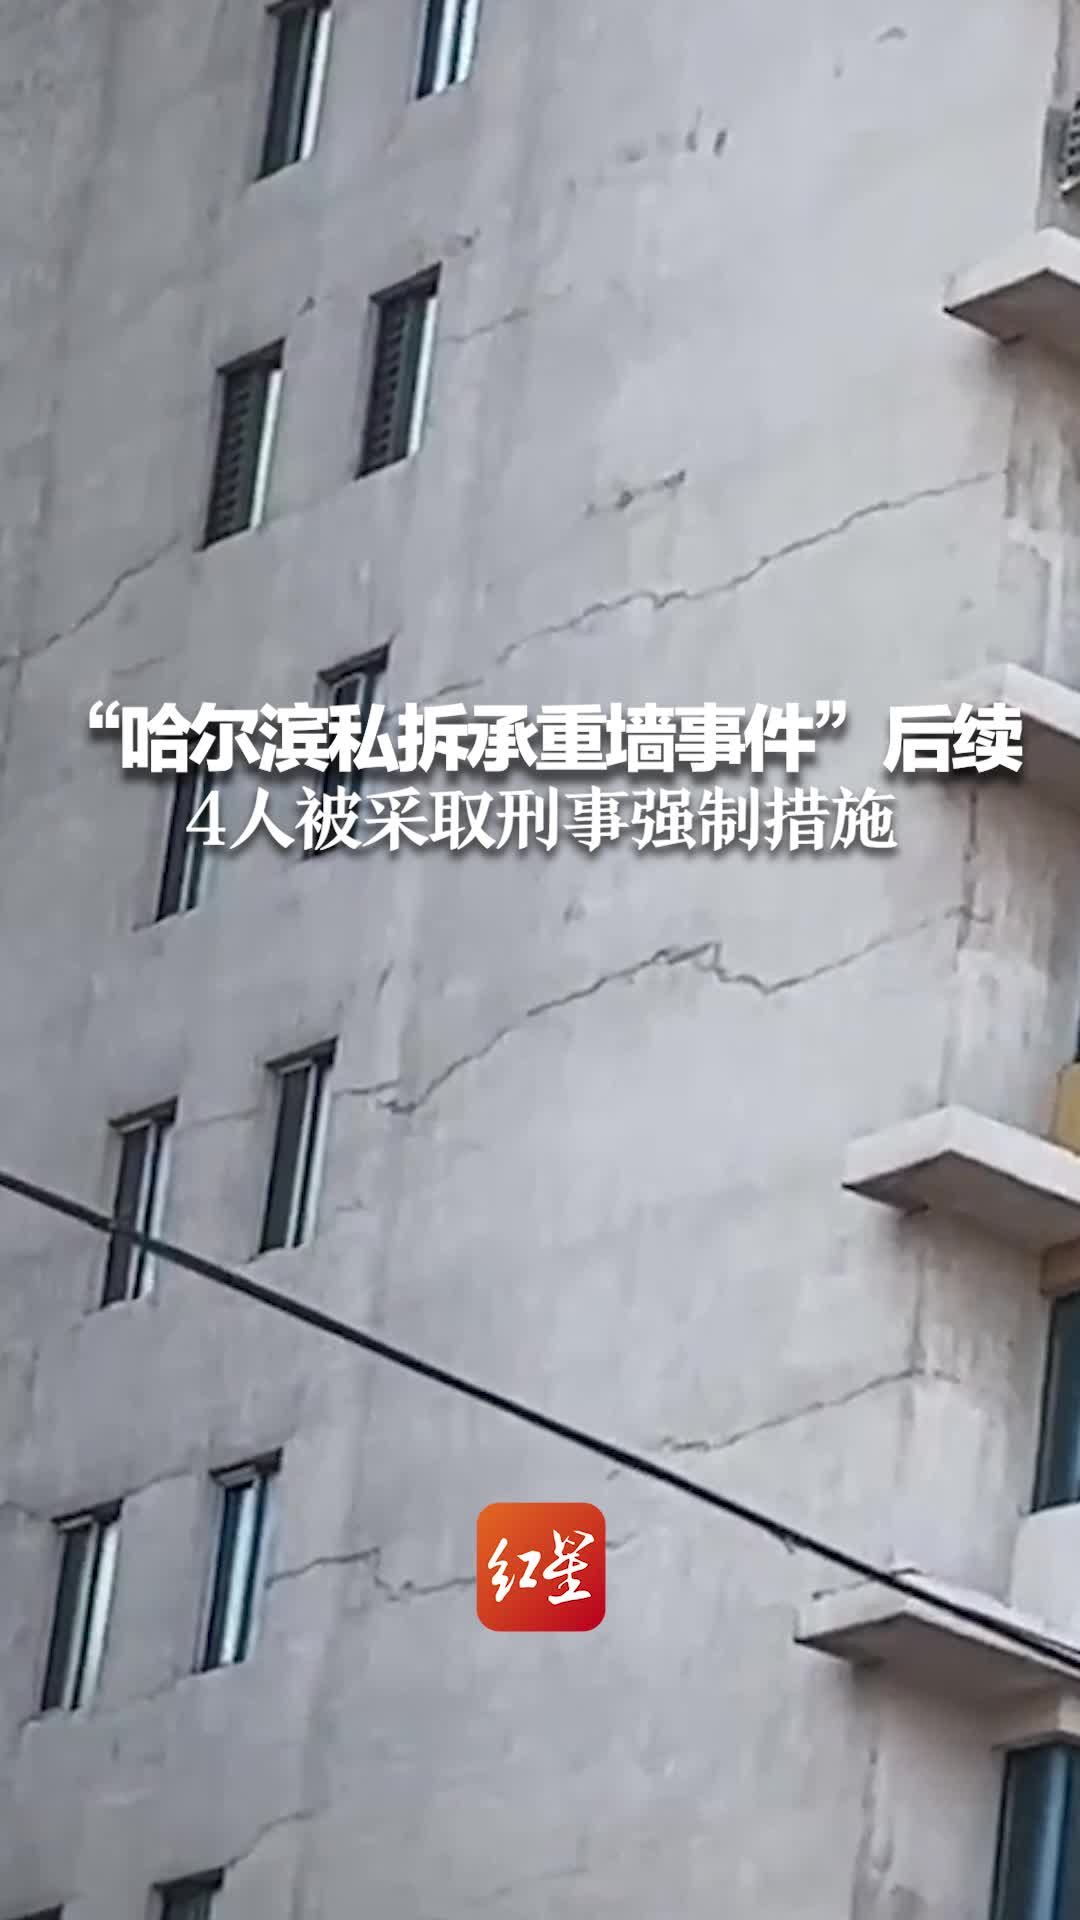 哈尔滨私拆承重墙楼栋仍有住户居住，25楼室内出现多处裂缝 - 封面新闻